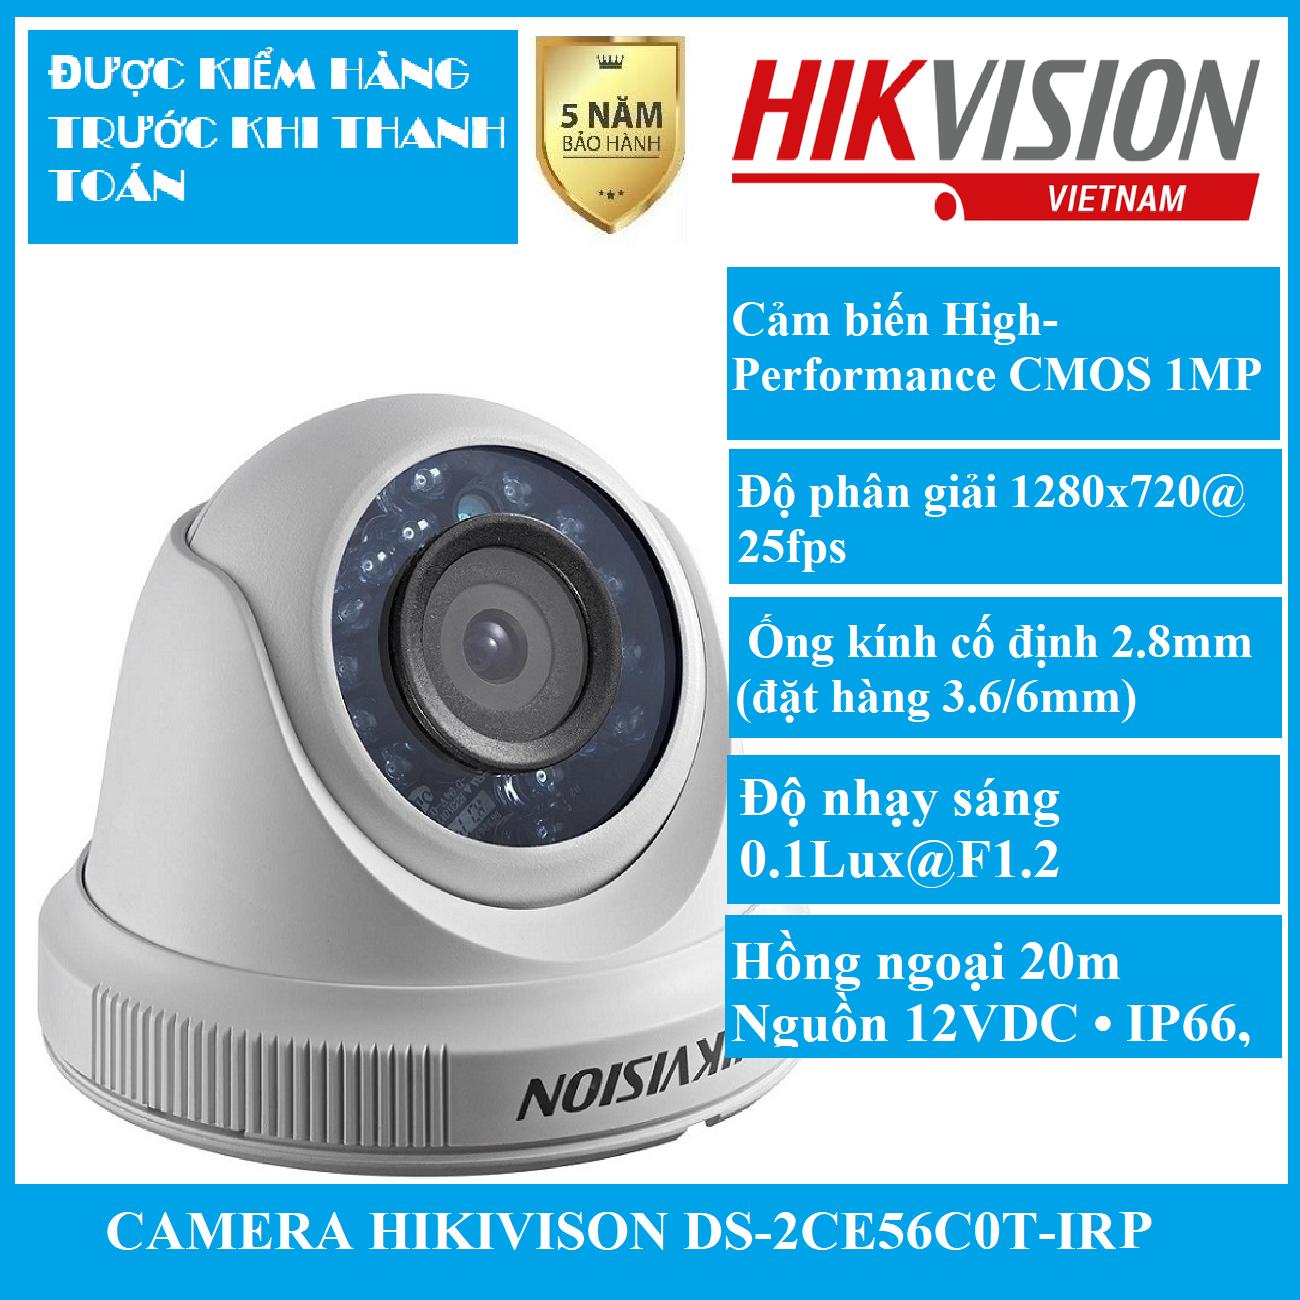 Camera HD-TVI bán cầu ngoài trời hồng ngoại 20m 1 MP Hikvision DS-2CE56C0T-IRP